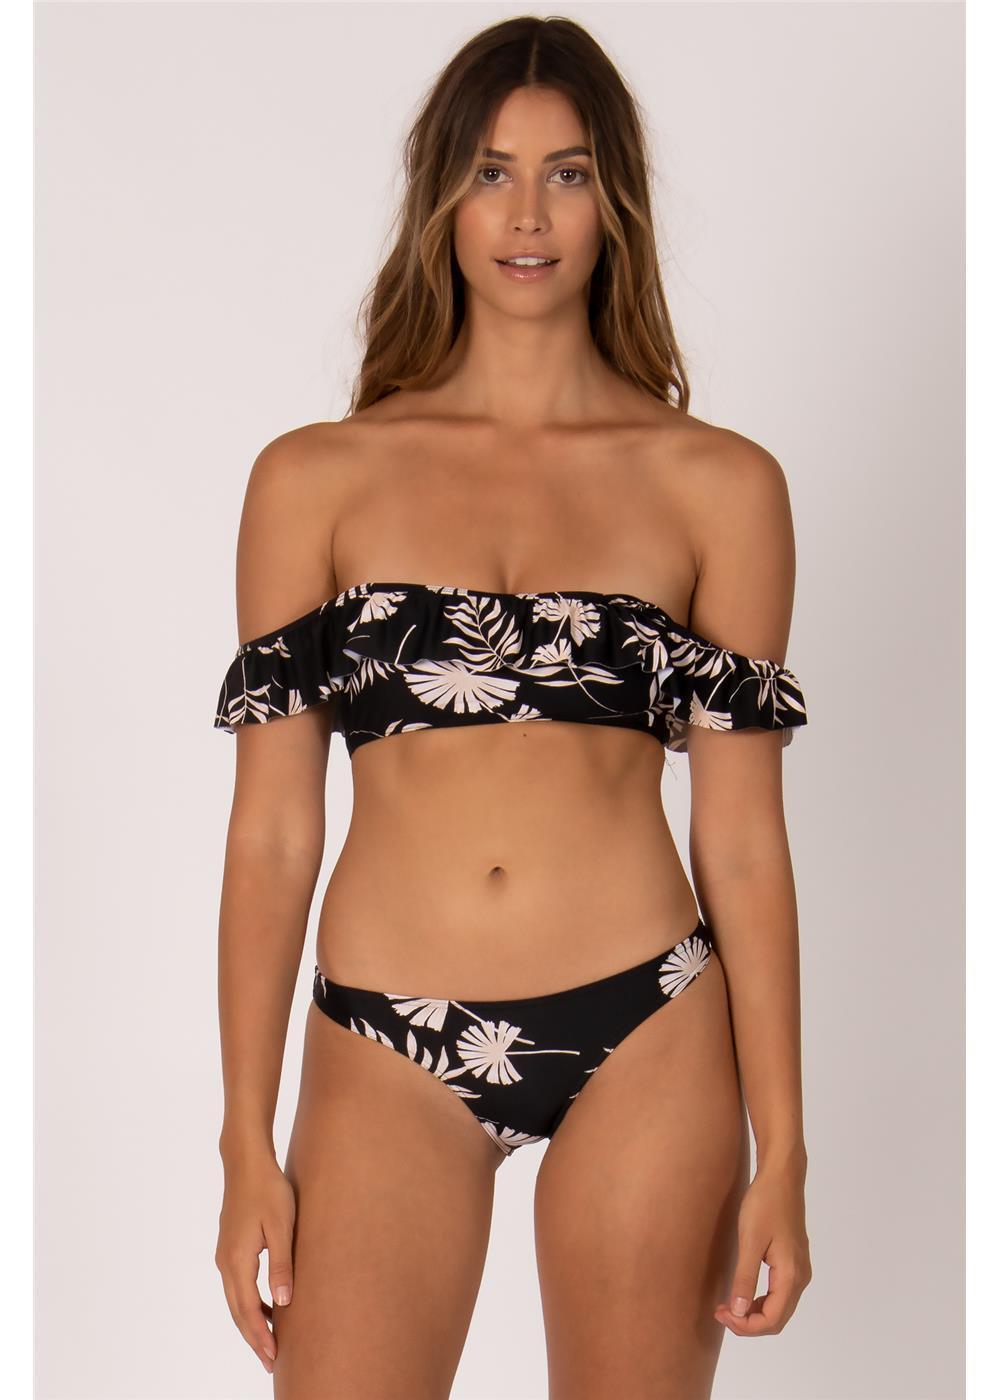 ANNABELLE BANDEAU bikini top - BLK